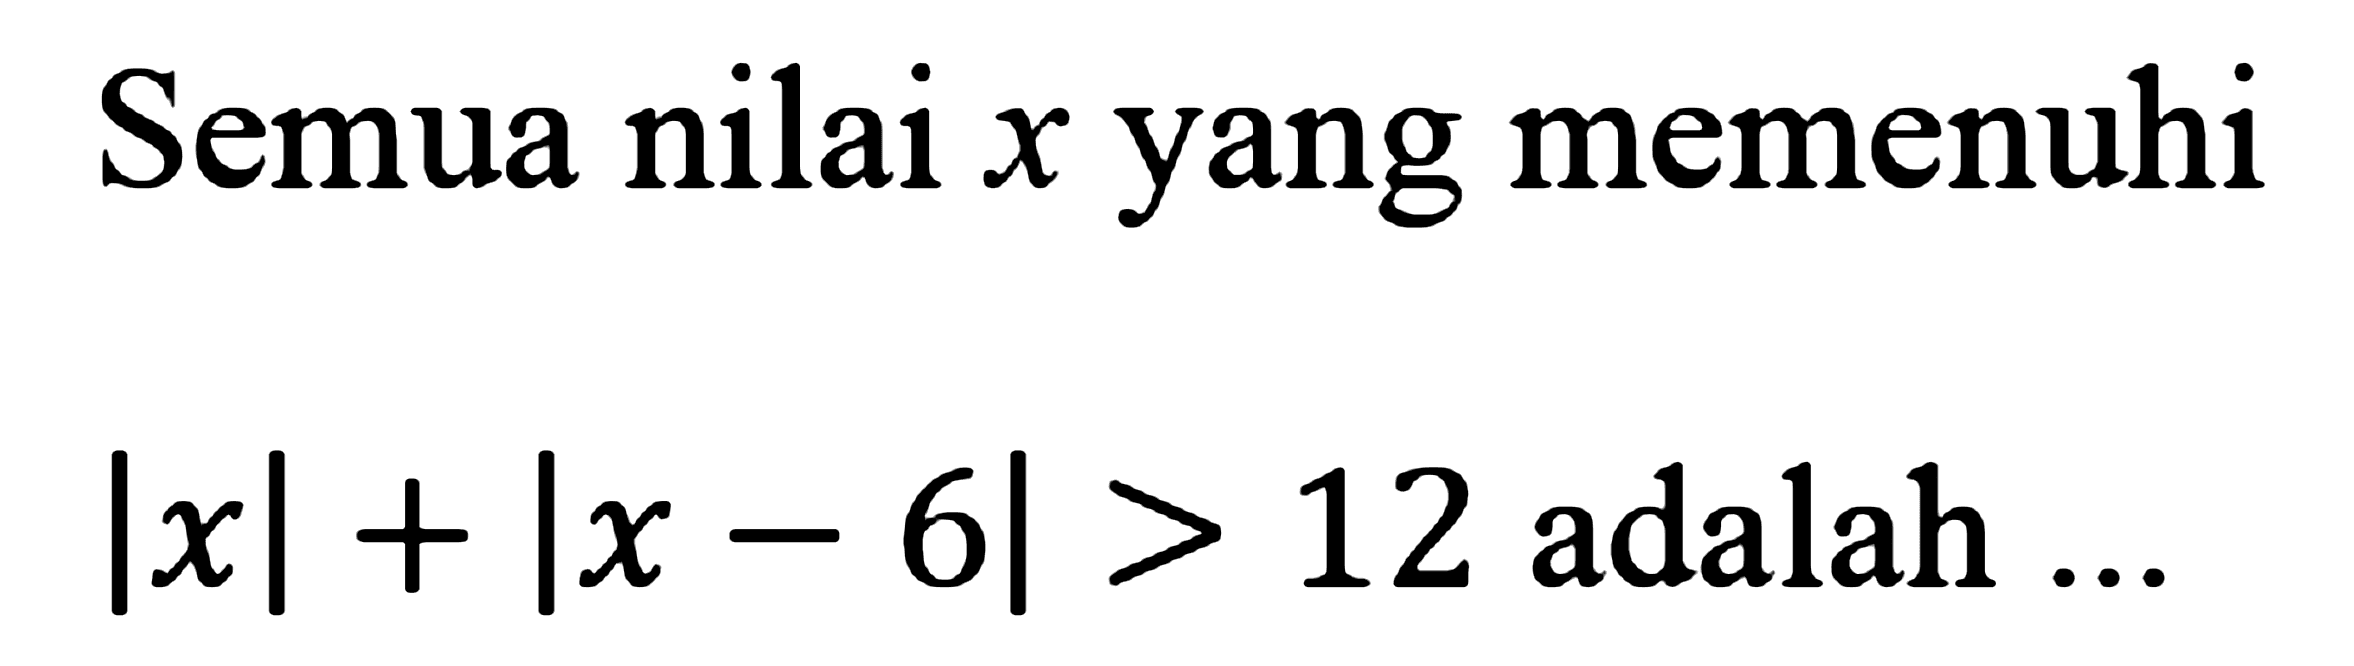 Semua nilai x yang memenuhi Ixl+|x-6|>12 adalah ...